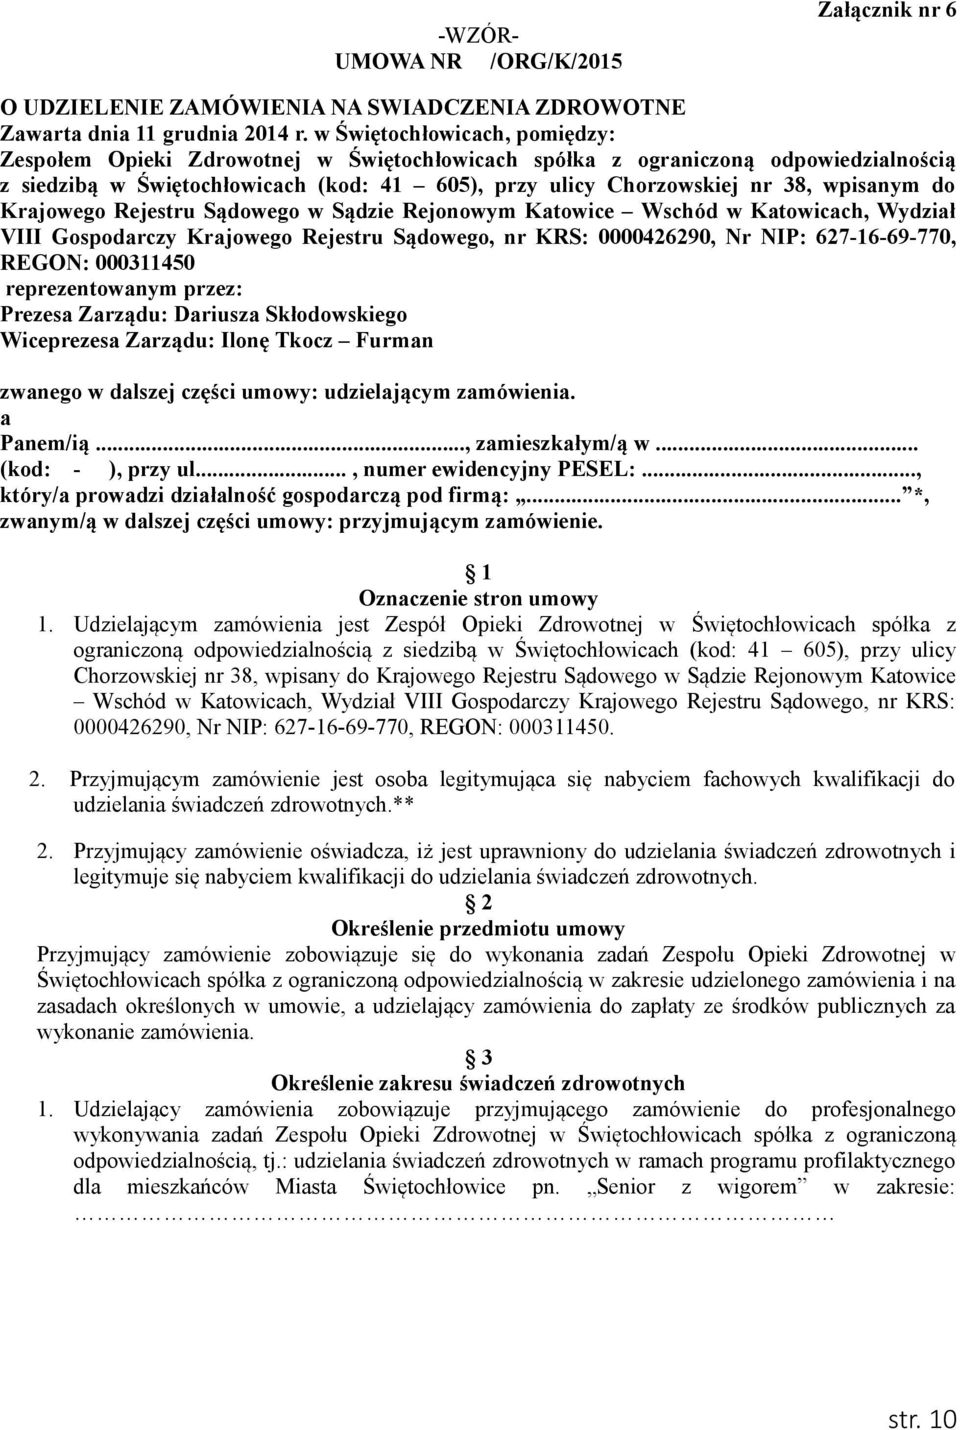 wpisanym do Krajowego Rejestru Sądowego w Sądzie Rejonowym Katowice Wschód w Katowicach, Wydział VIII Gospodarczy Krajowego Rejestru Sądowego, nr KRS: 0000426290, Nr NIP: 627-16-69-770, REGON: